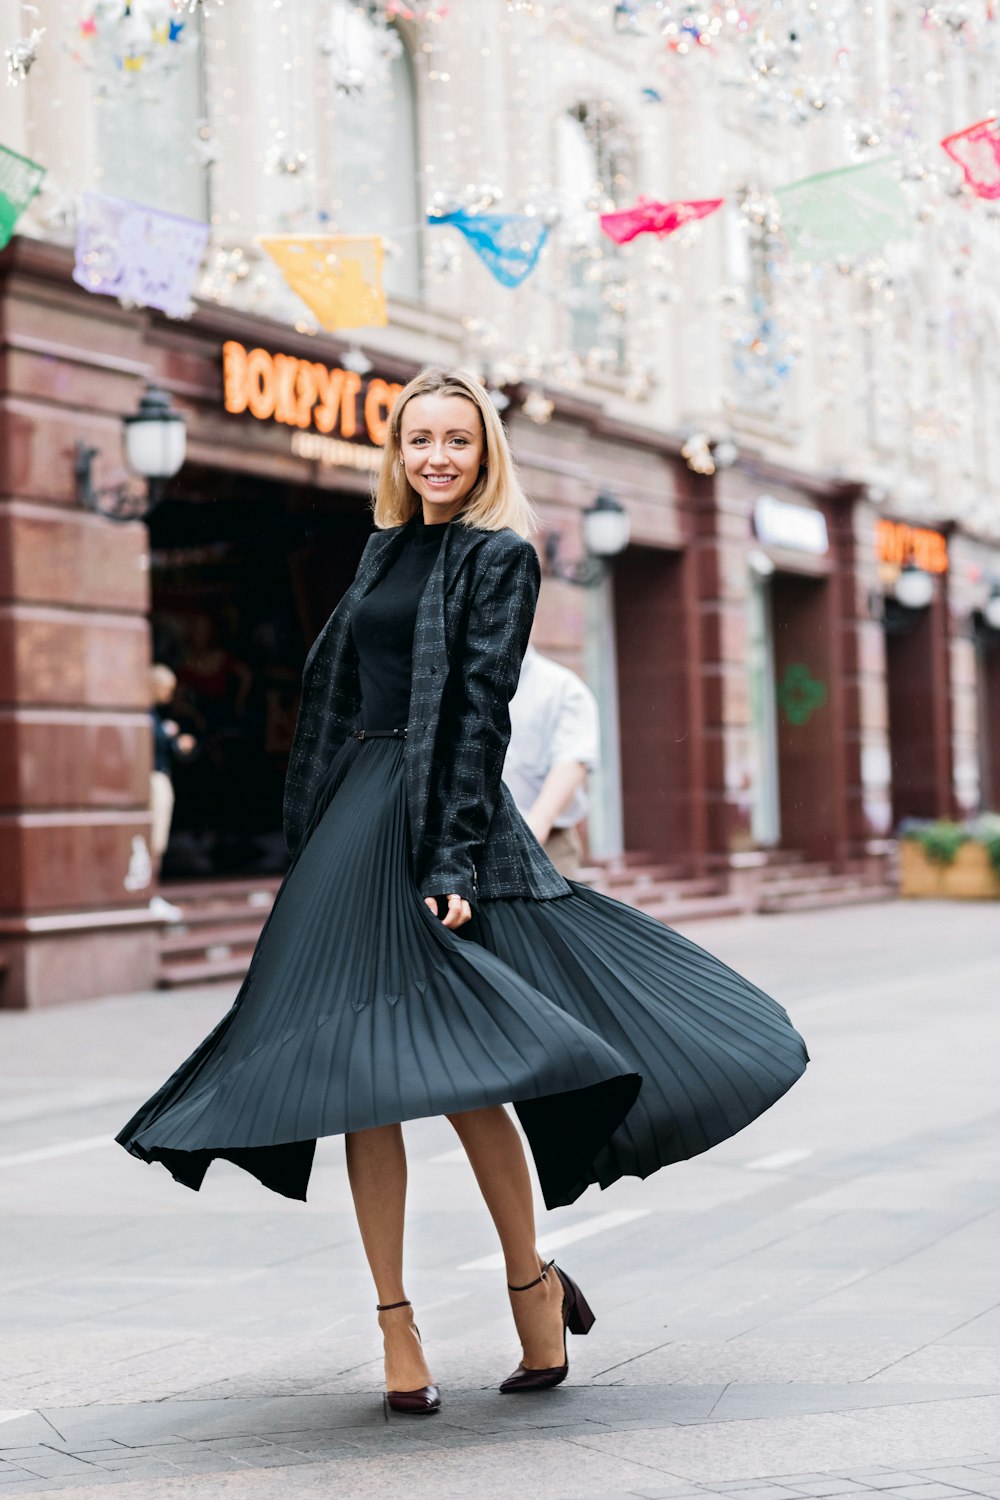 コンクリート舗装の上に立つ黒いドレスを着た笑顔の女性のセレクティブフォーカス写真